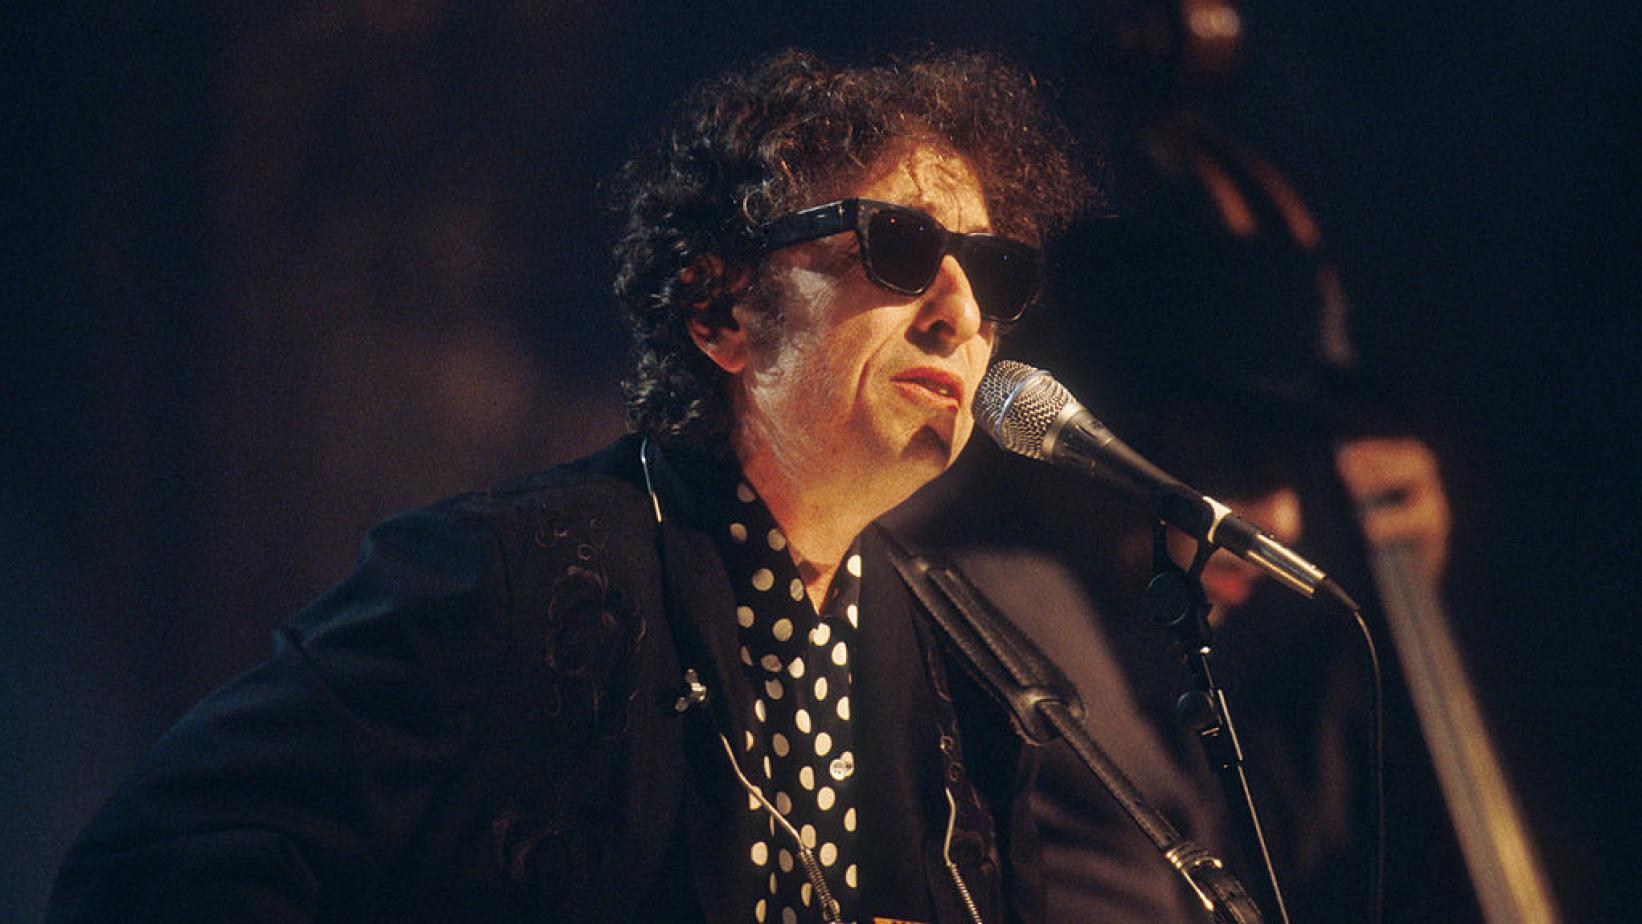 یونیورسال بزرگترین قرارداد موسیقی تاریخ را با باب دیلن امضا کرده است  آخرین خبرها